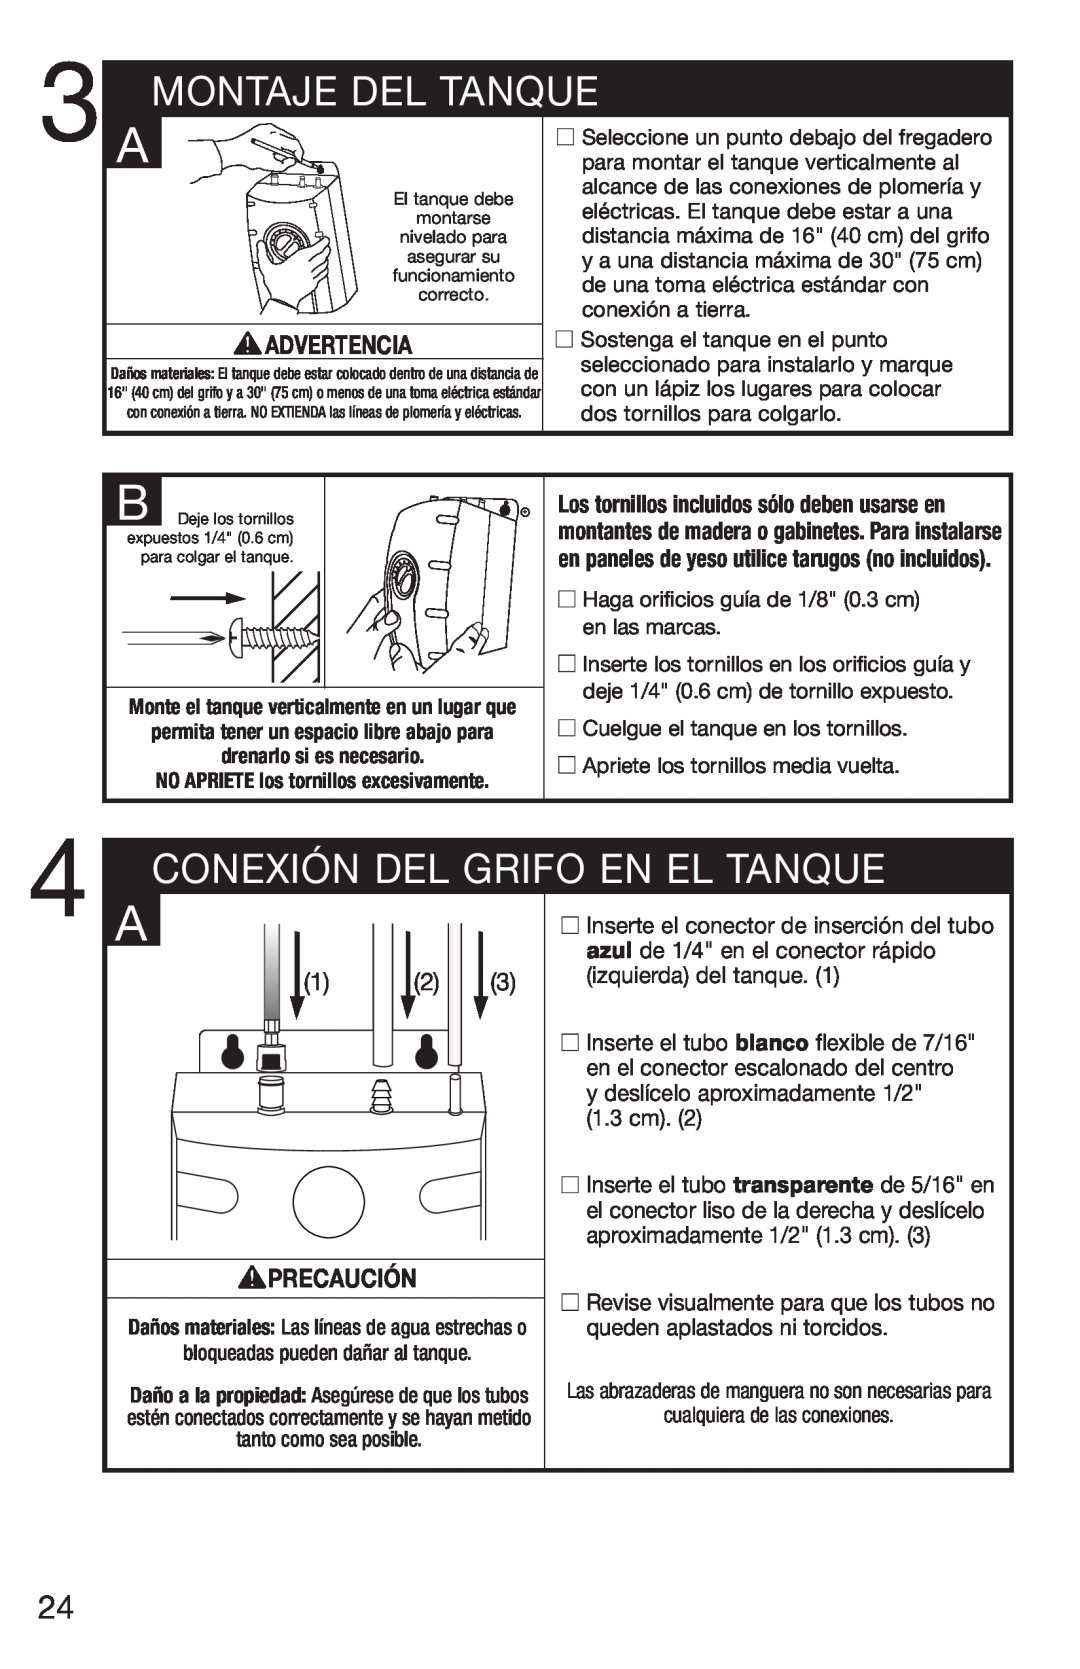 InSinkErator HC3/GN3, H770 owner manual Montaje Del Tanque, Conexión Del Grifo En El Tanque, Advertencia, Precaución 